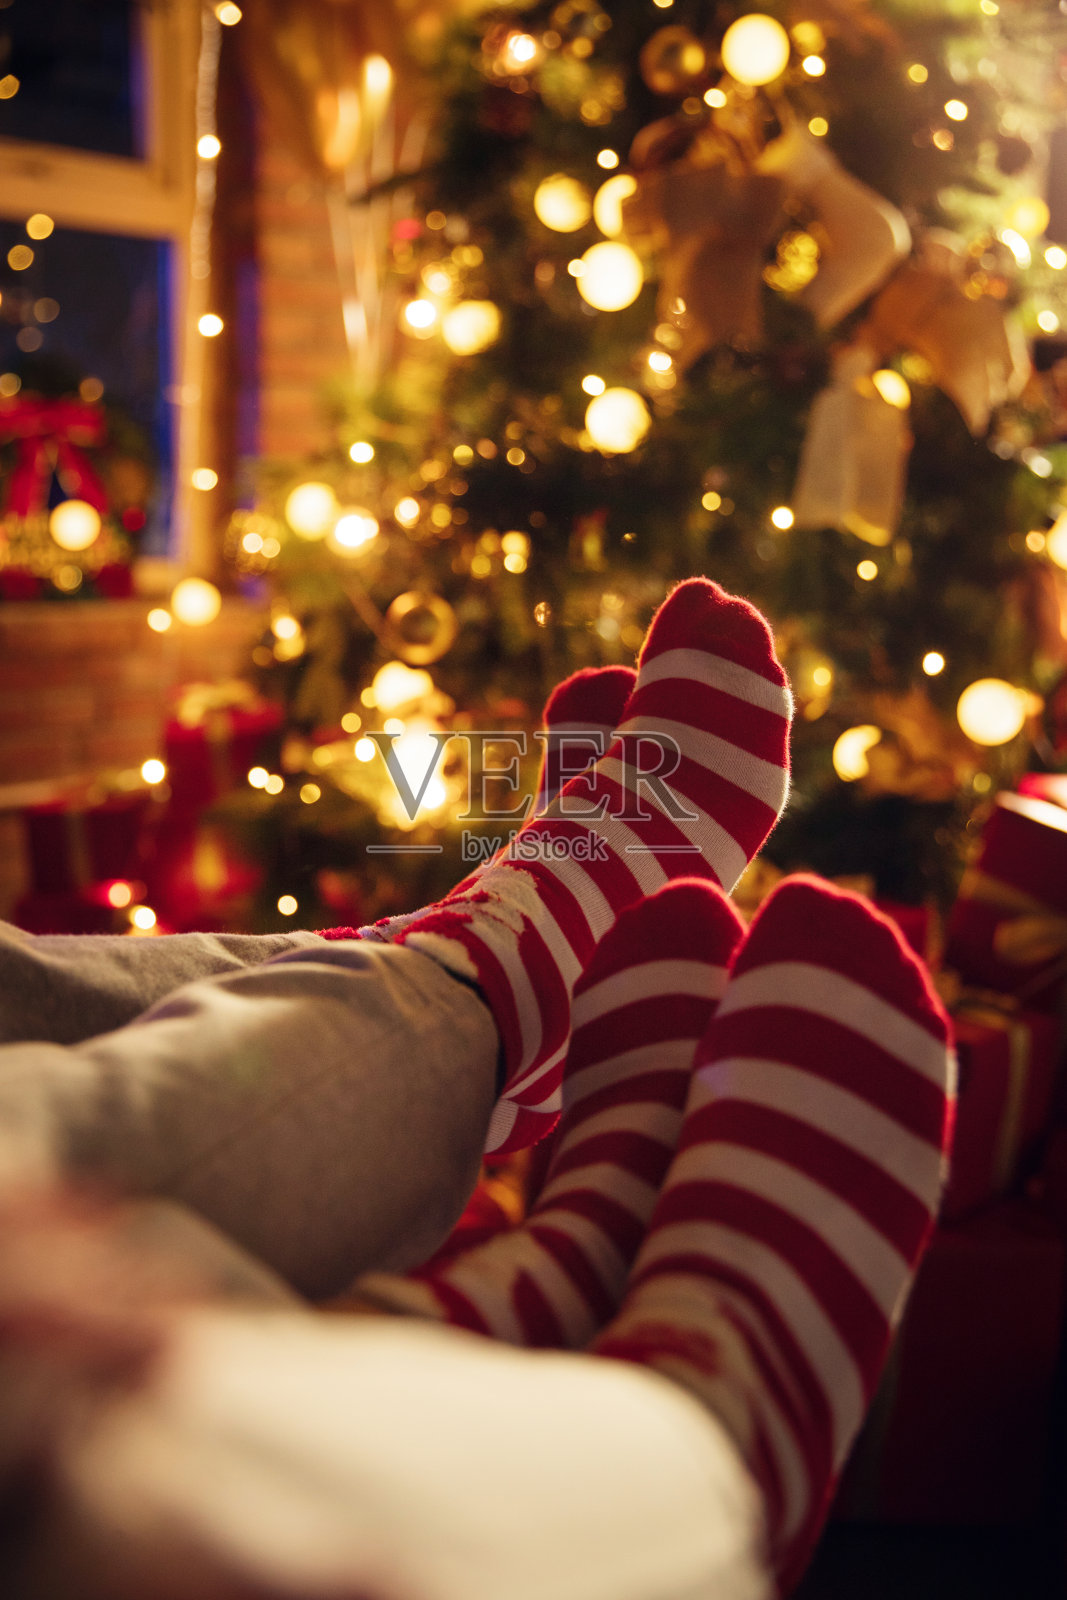 穿着圣诞情侣袜的脚部特写照片摄影图片